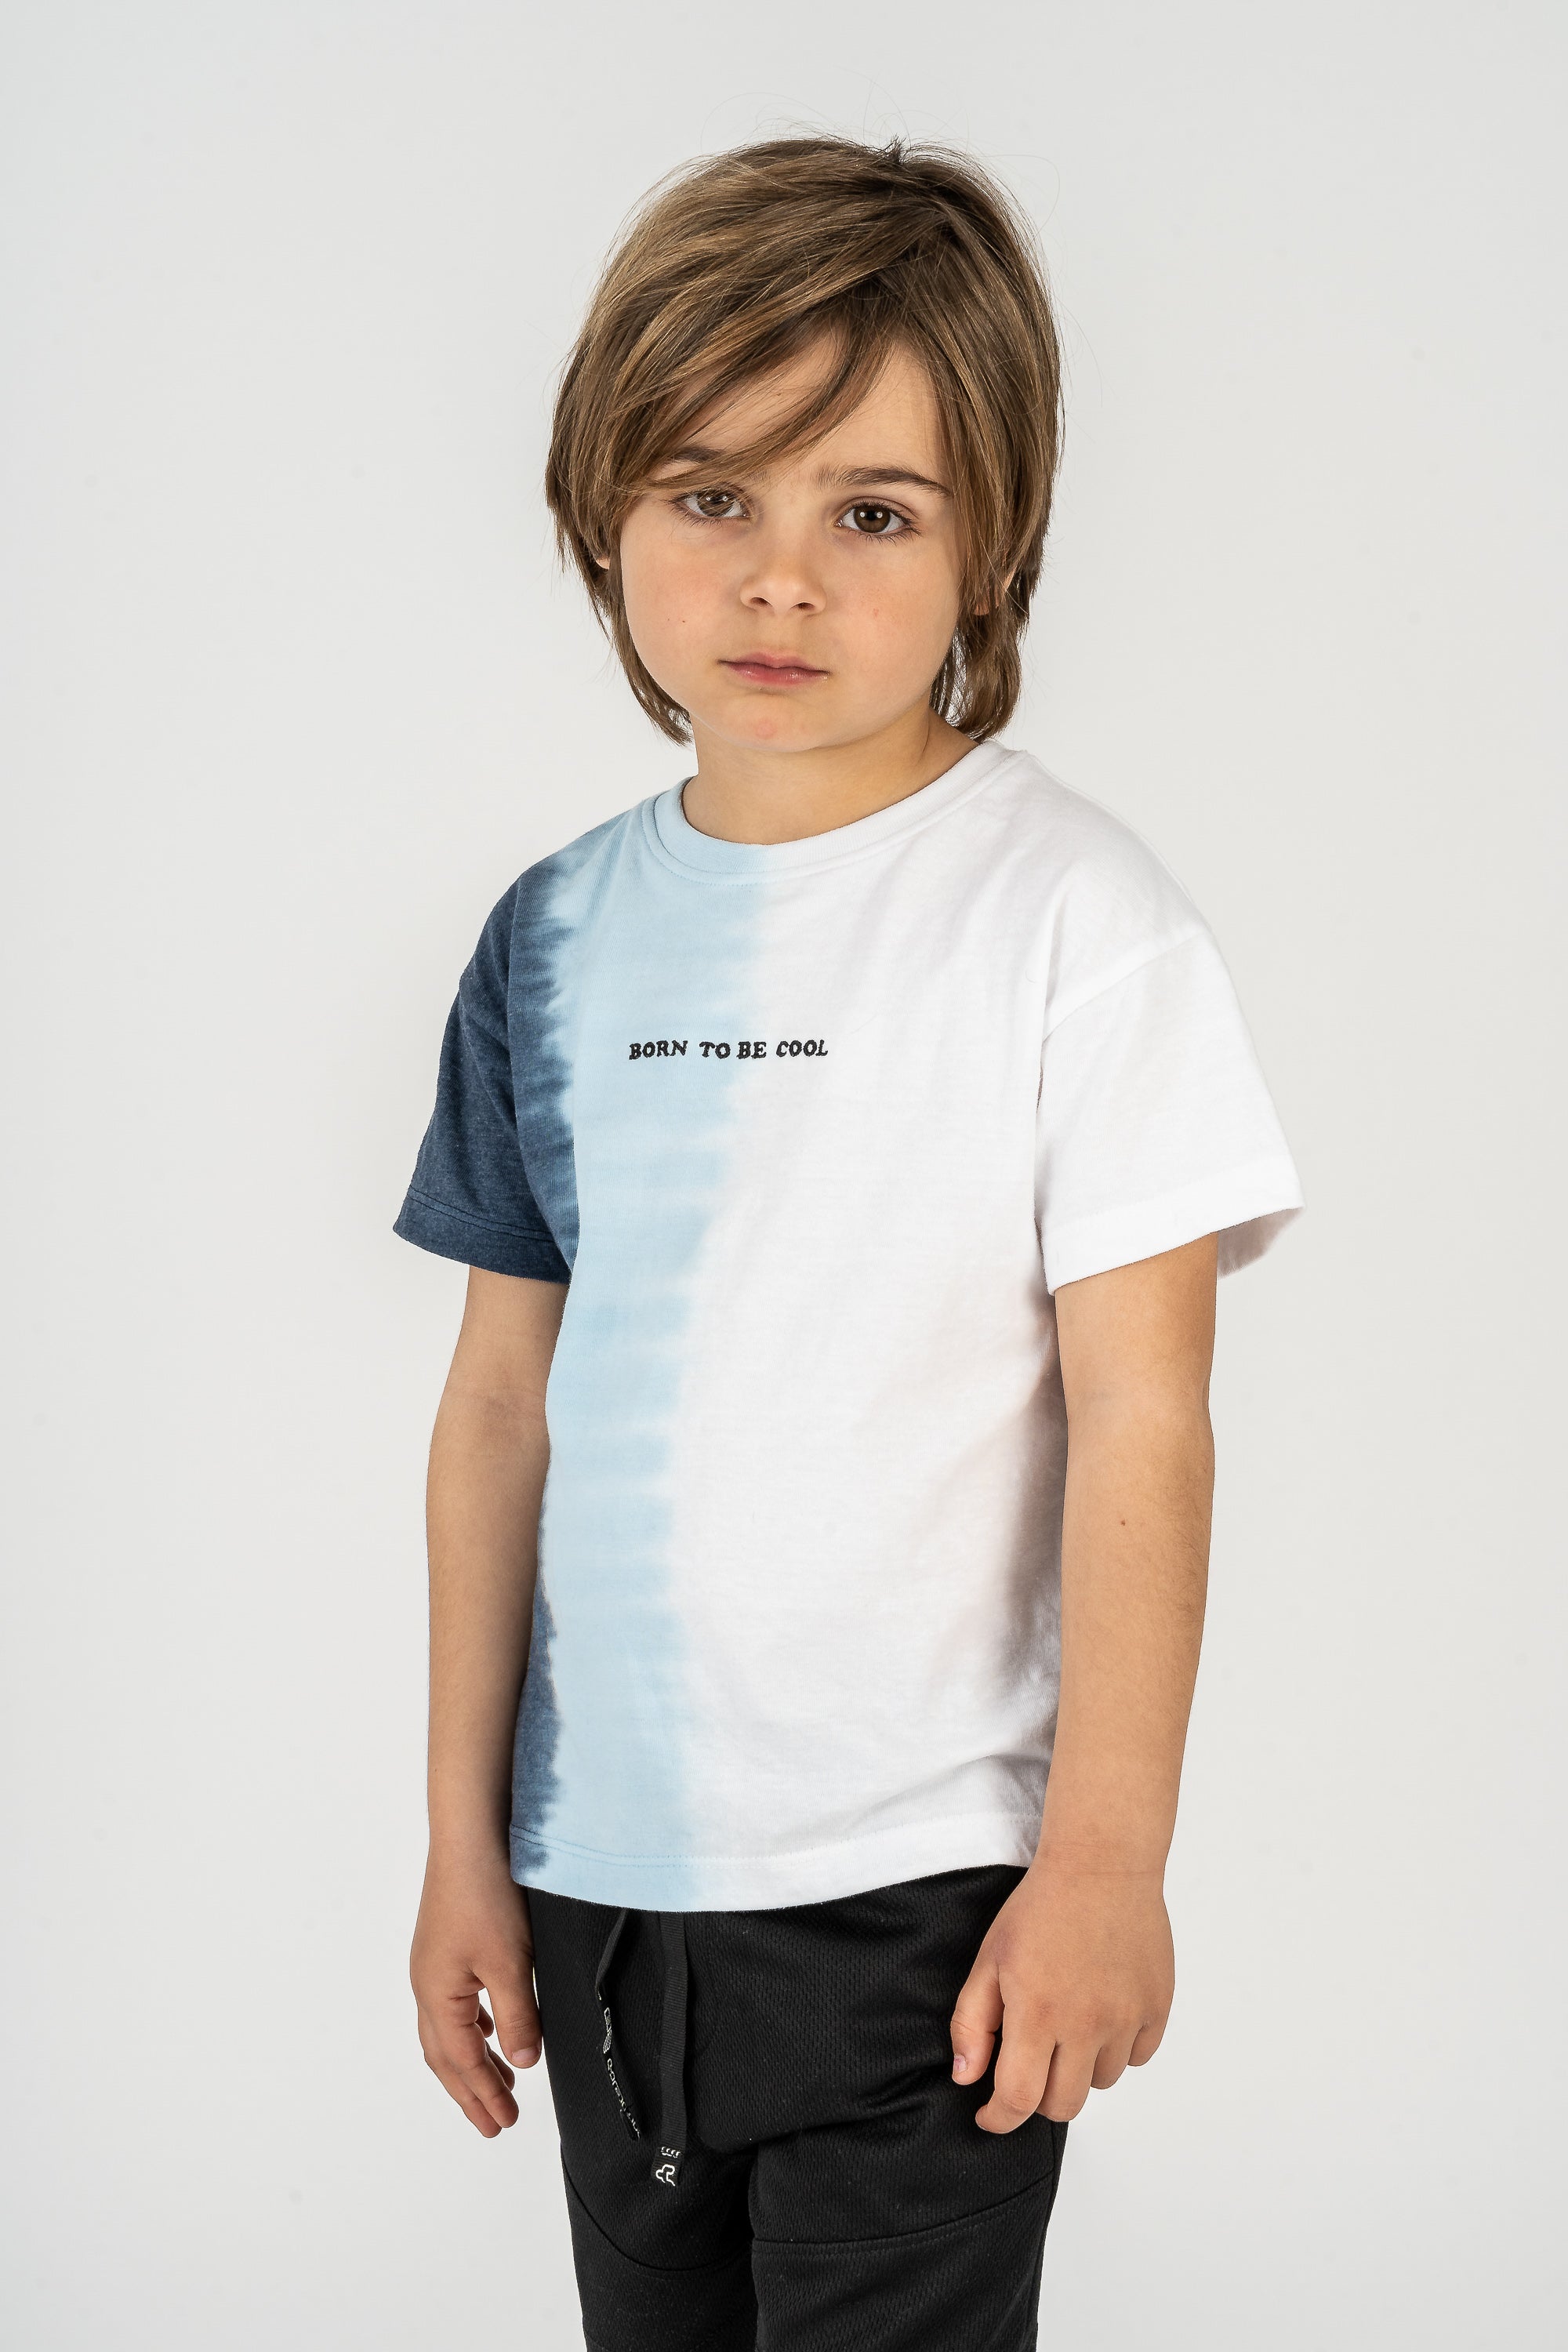 Camiseta de niño multicolor VERANO/Charanga